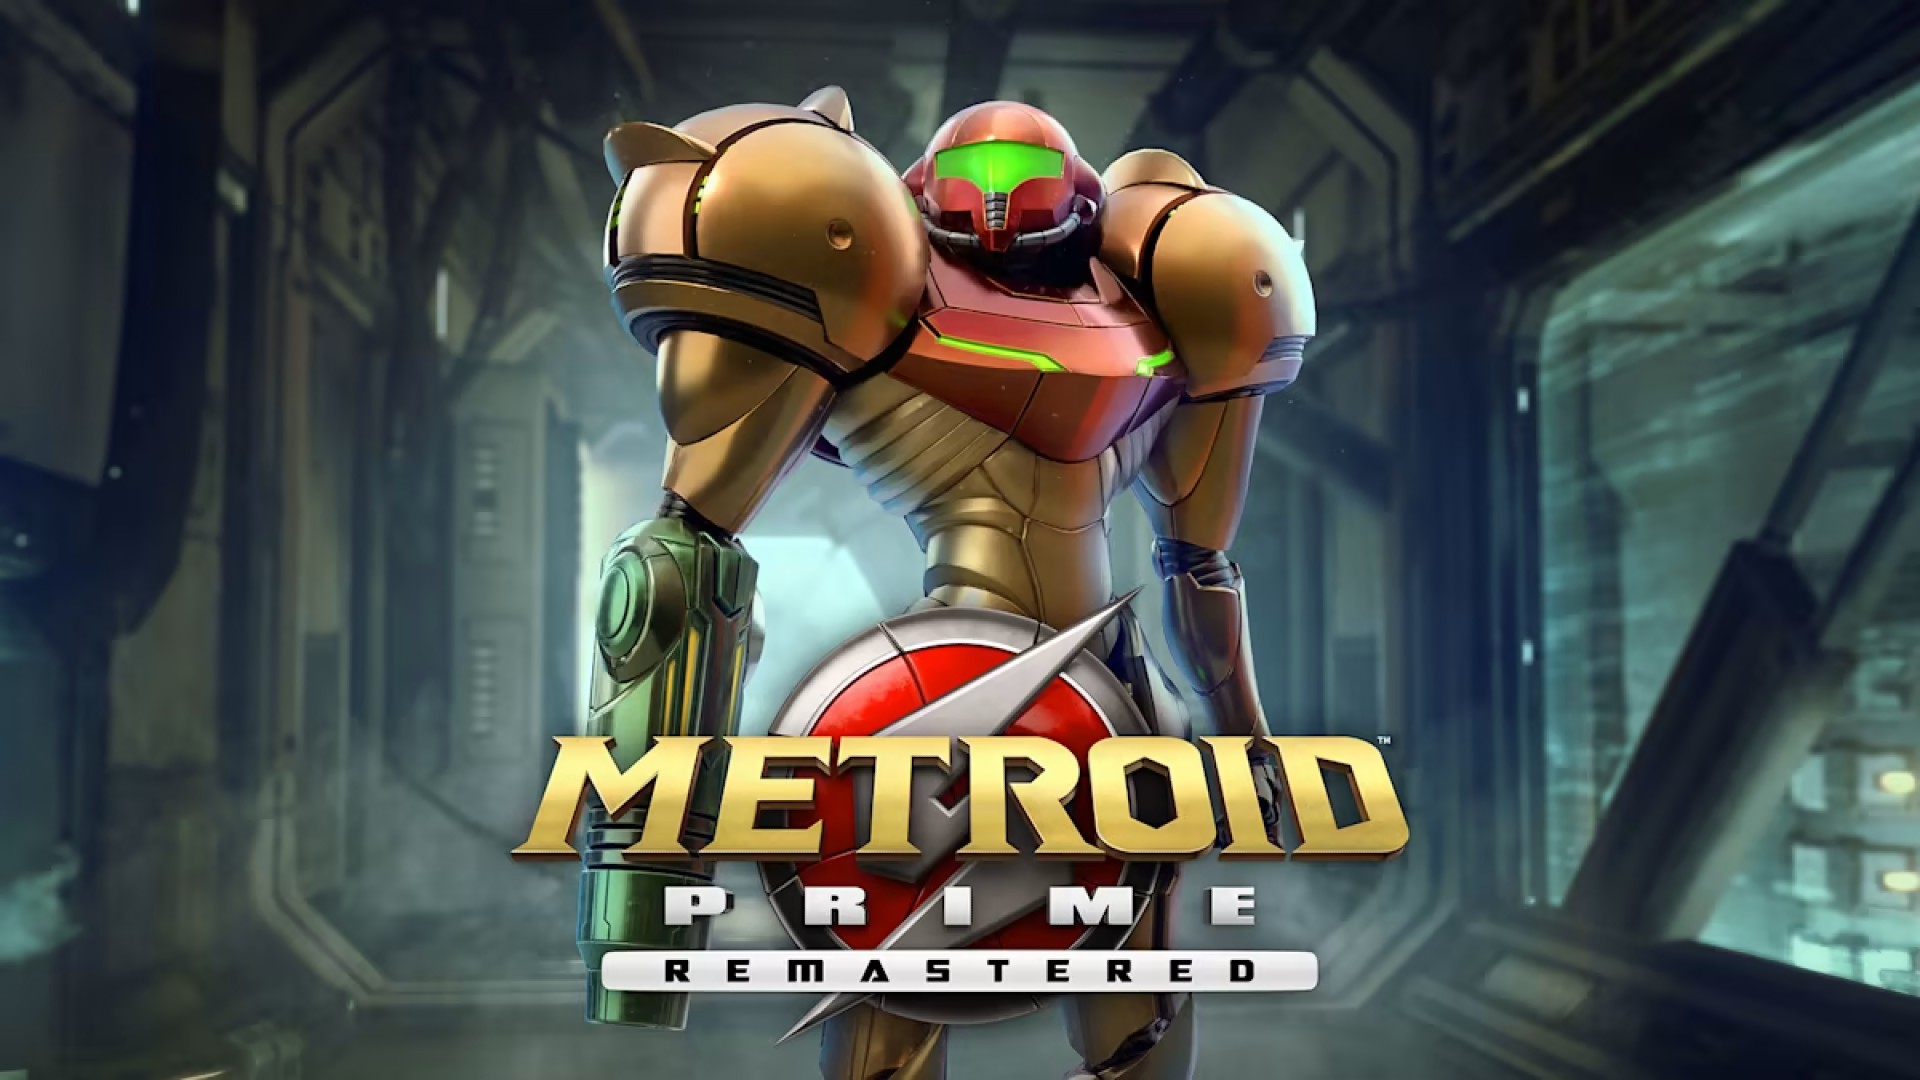 อดีตทีมงาน Metroid Prime ไม่พอใจ Metroid Prime Remastered ไม่ให้เครดิตทีมงานต้นฉบับ